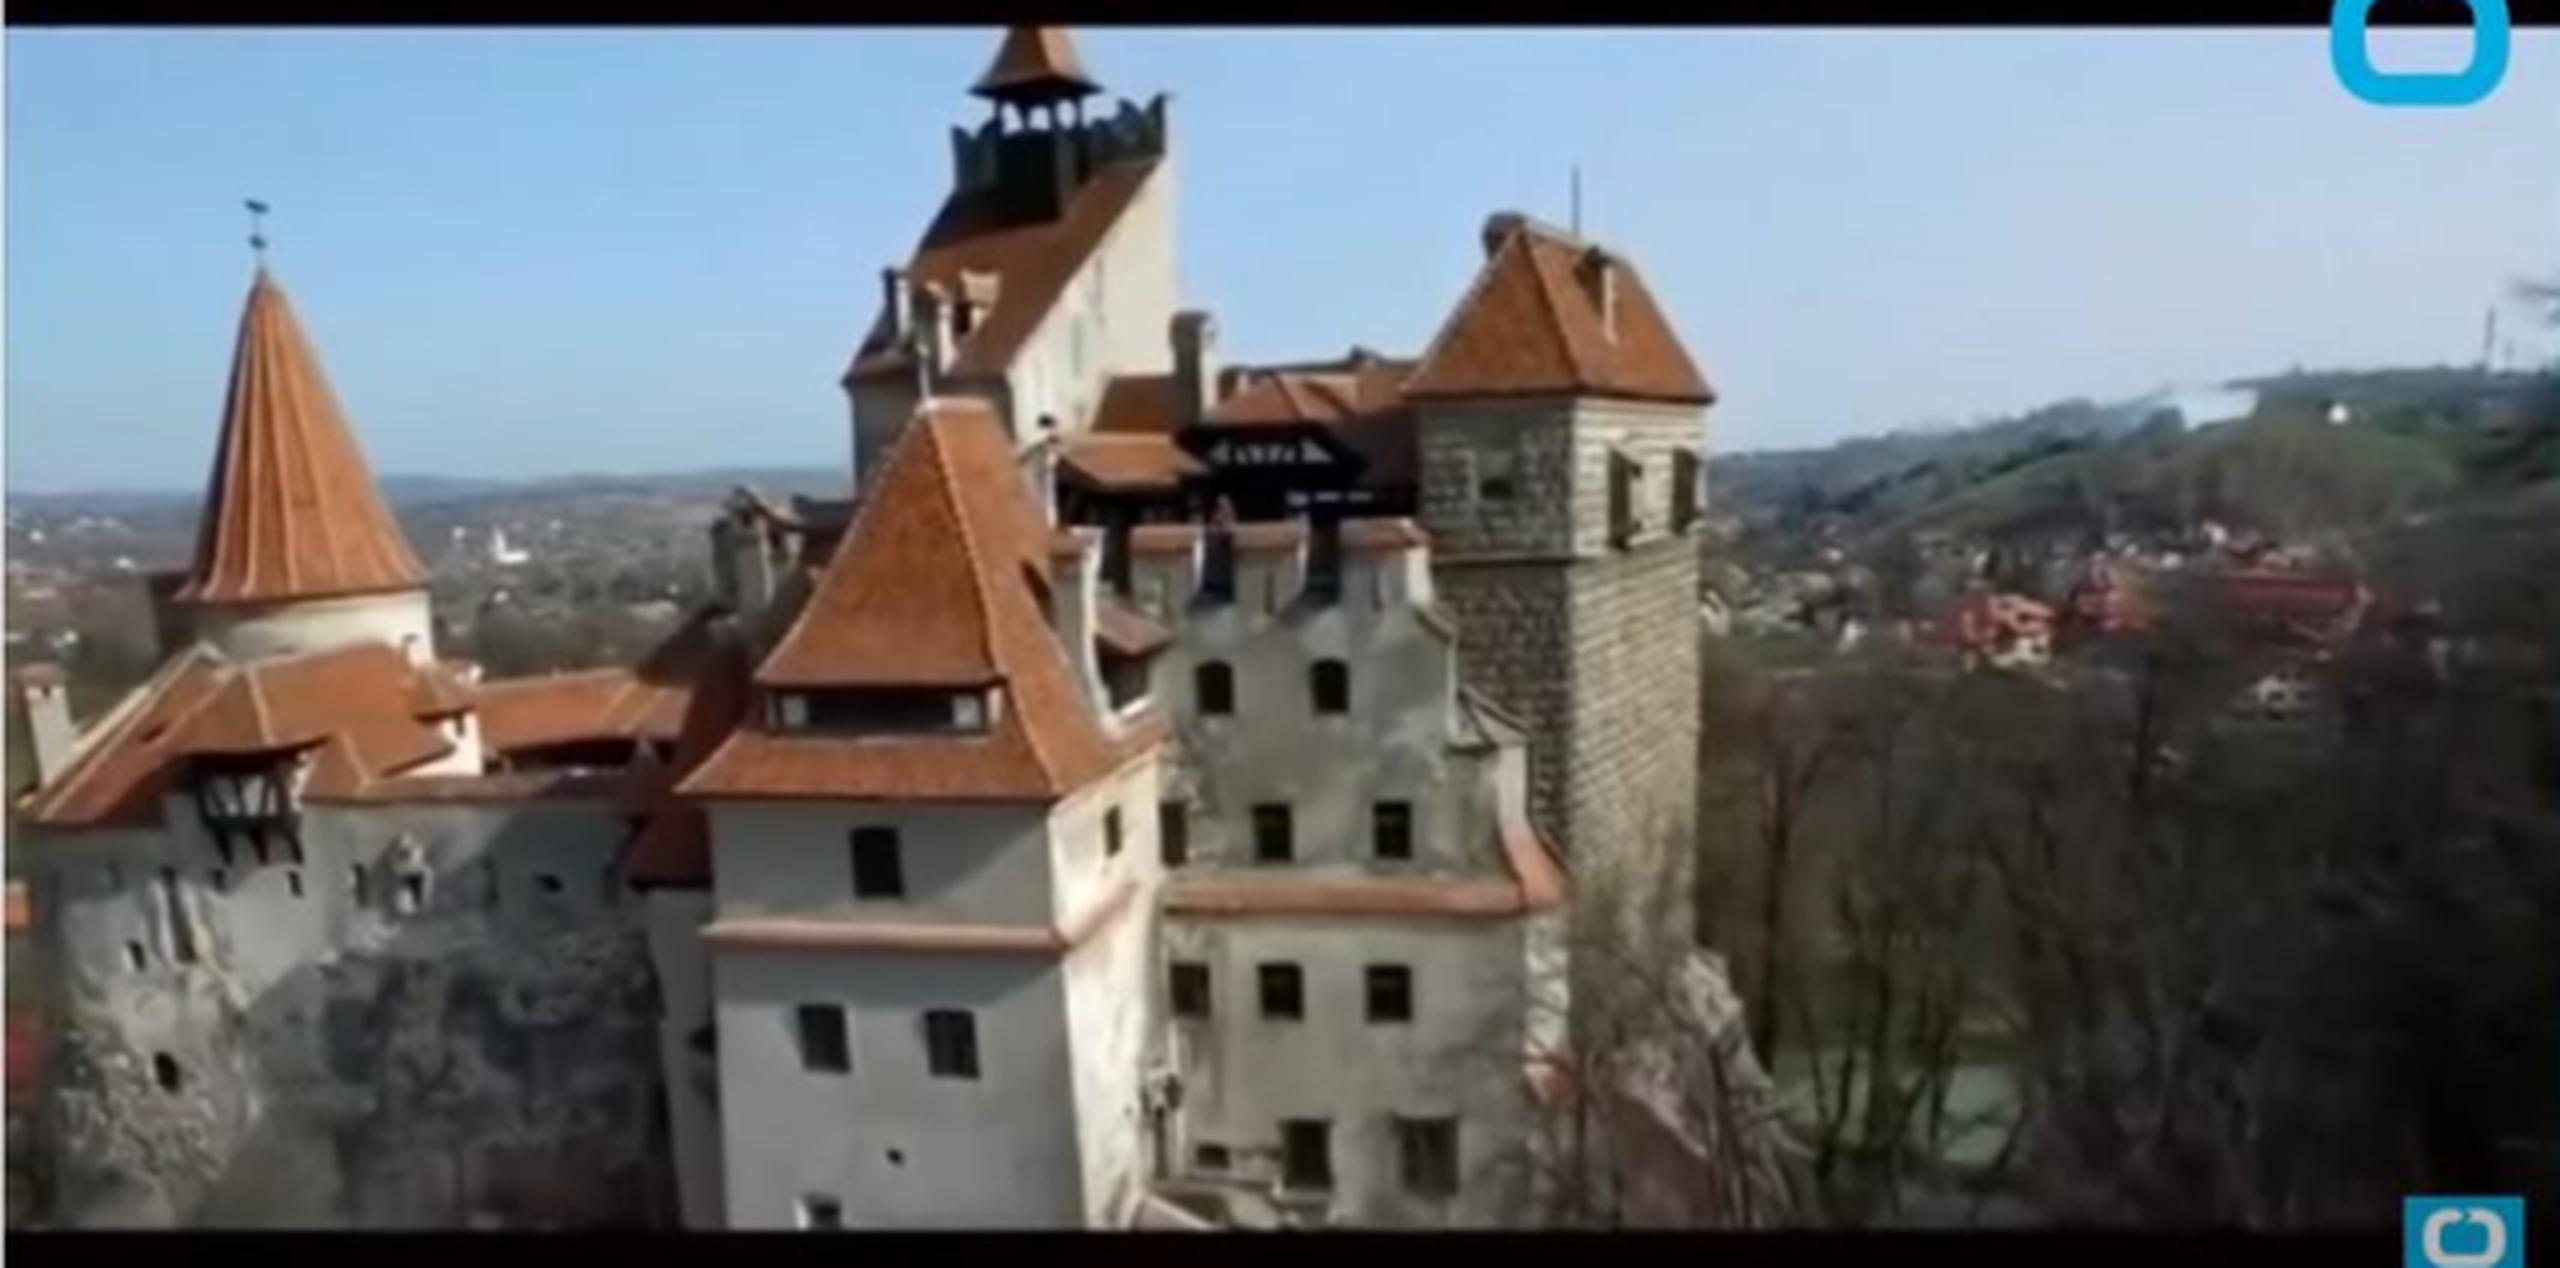 El Castillo Bran, en Transilvania, fue construido en el siglo XIV y se cree fue hogar del príncipe Vlad el Empalador, personaje que inspiró las leyendas de Drácula. (Captura)